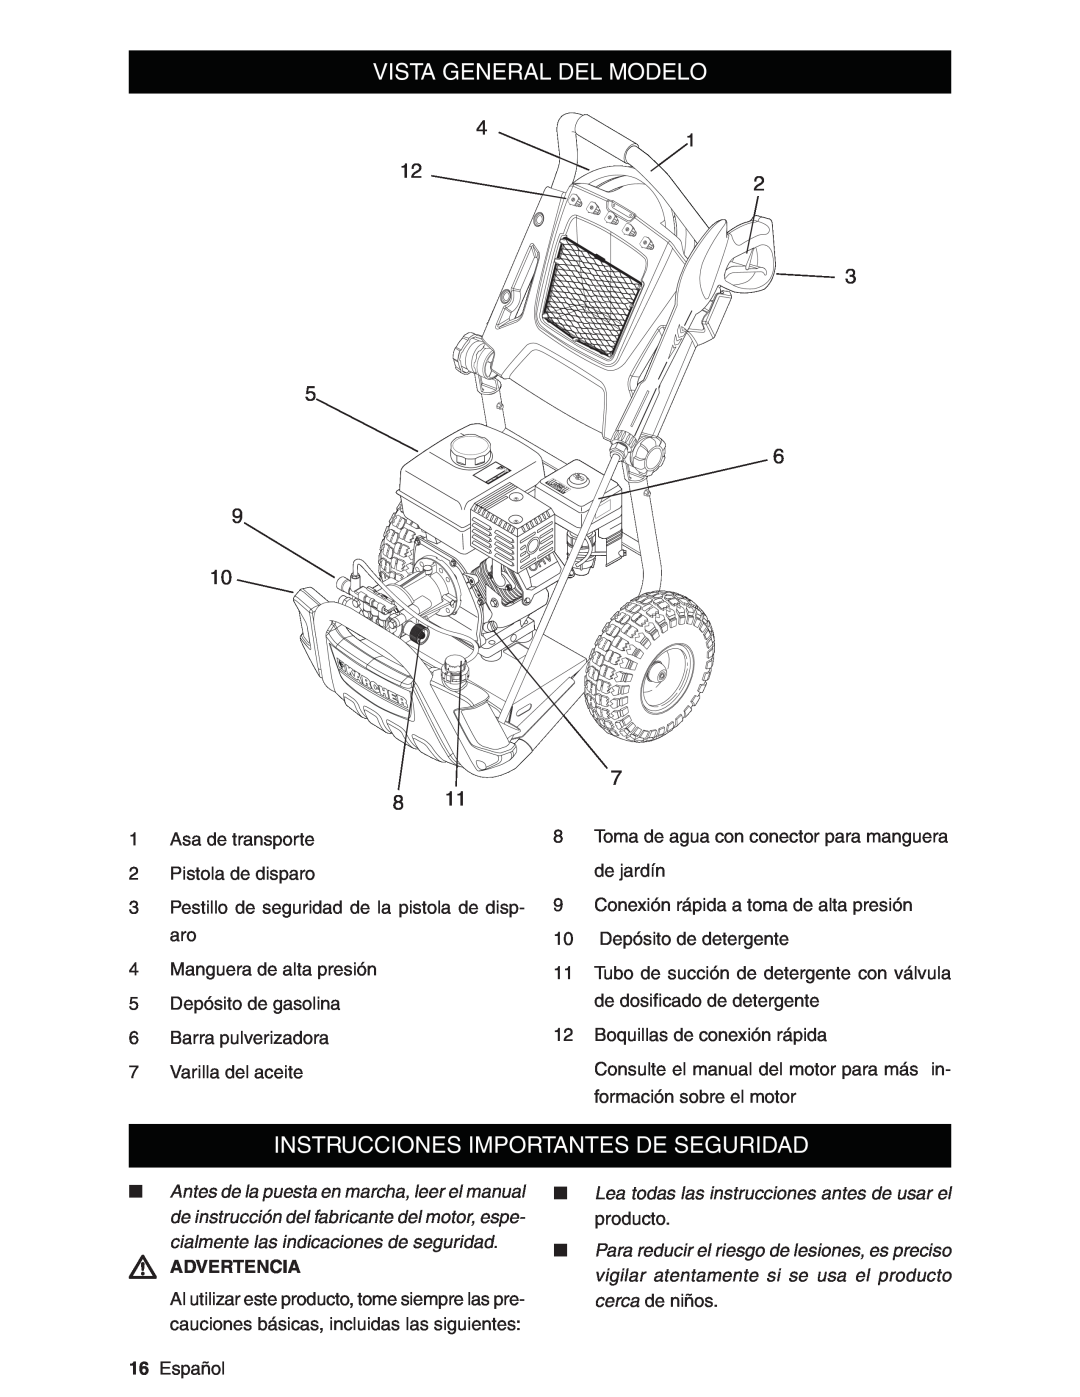 Karcher G3200XH manual Vista General Del Modelo, Instrucciones Importantes De Seguridad, Advertencia 